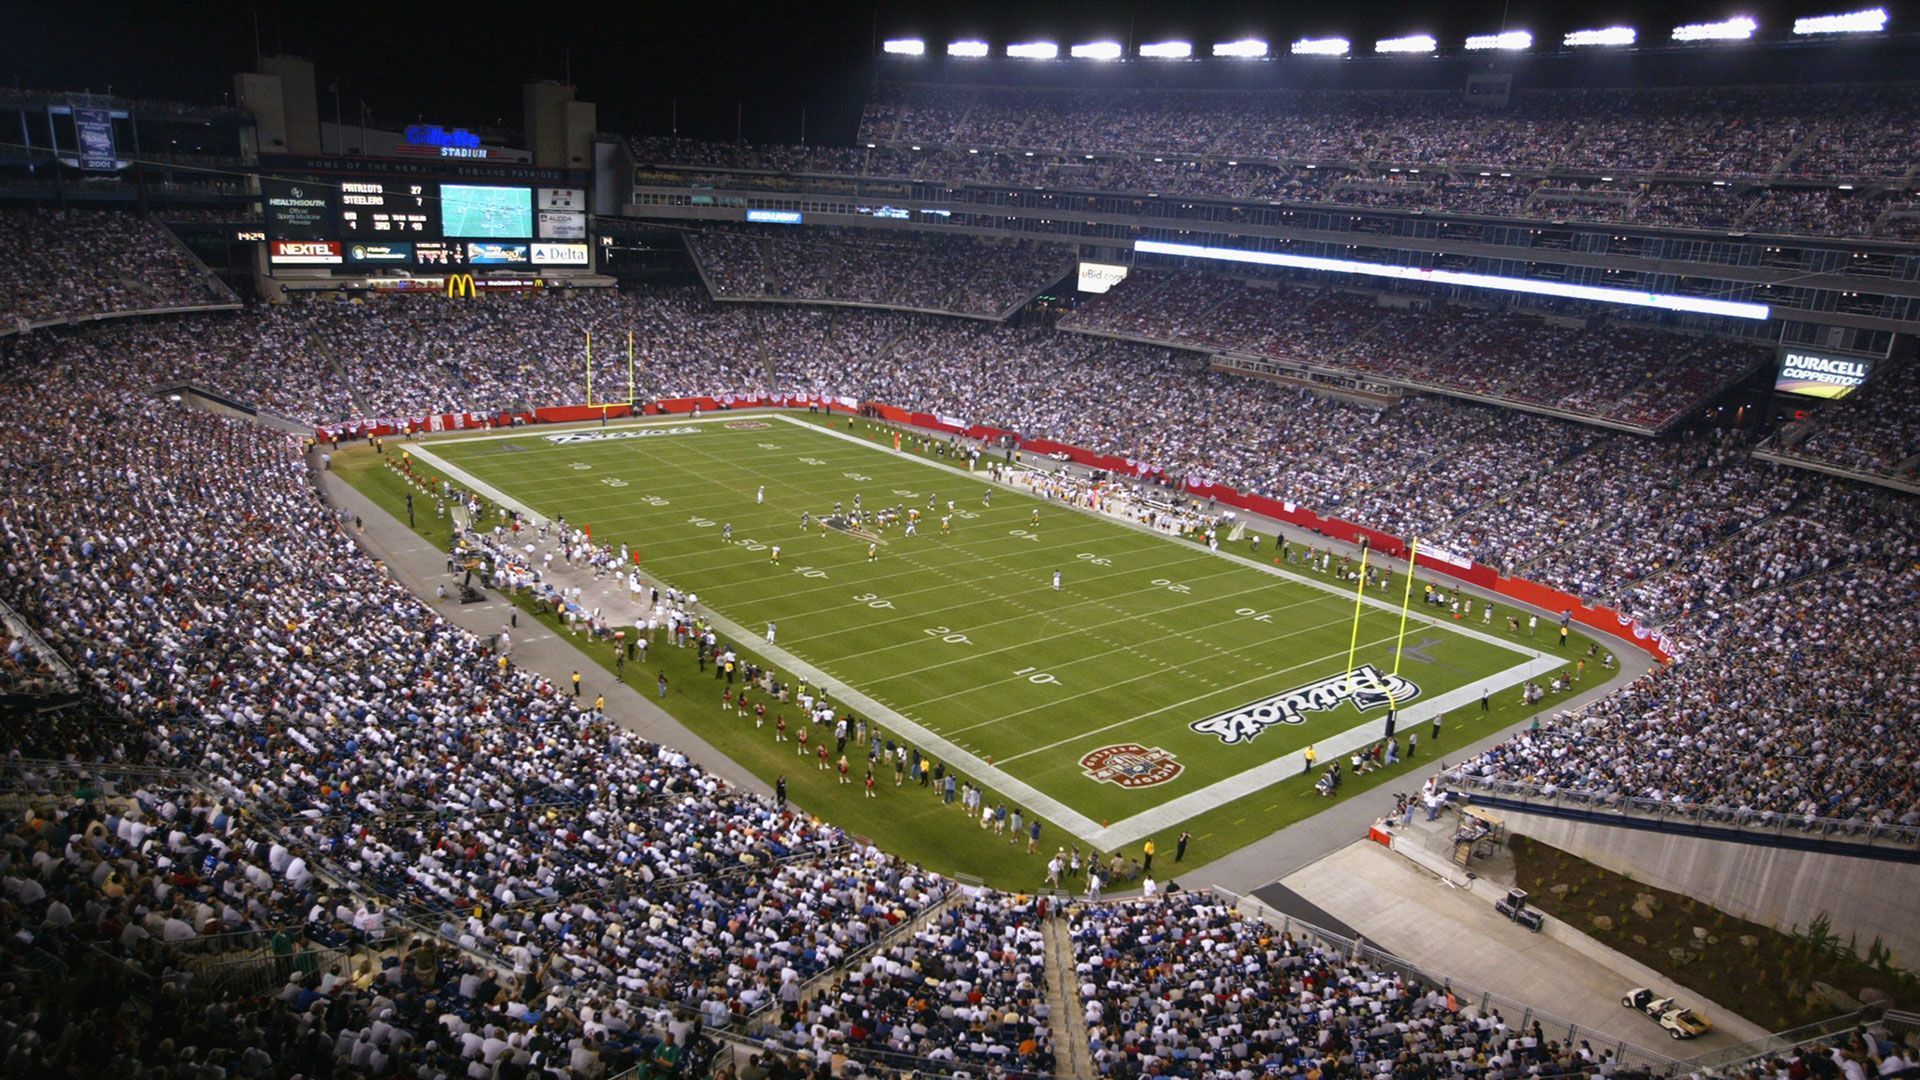 
                <strong>Platz 13 (geteilt): New England Patriots</strong><br>
                &#x2022; Stadion: Gillette Stadium<br>&#x2022; Preis für ein kleines Bier: 10,50 Dollar <br>
              